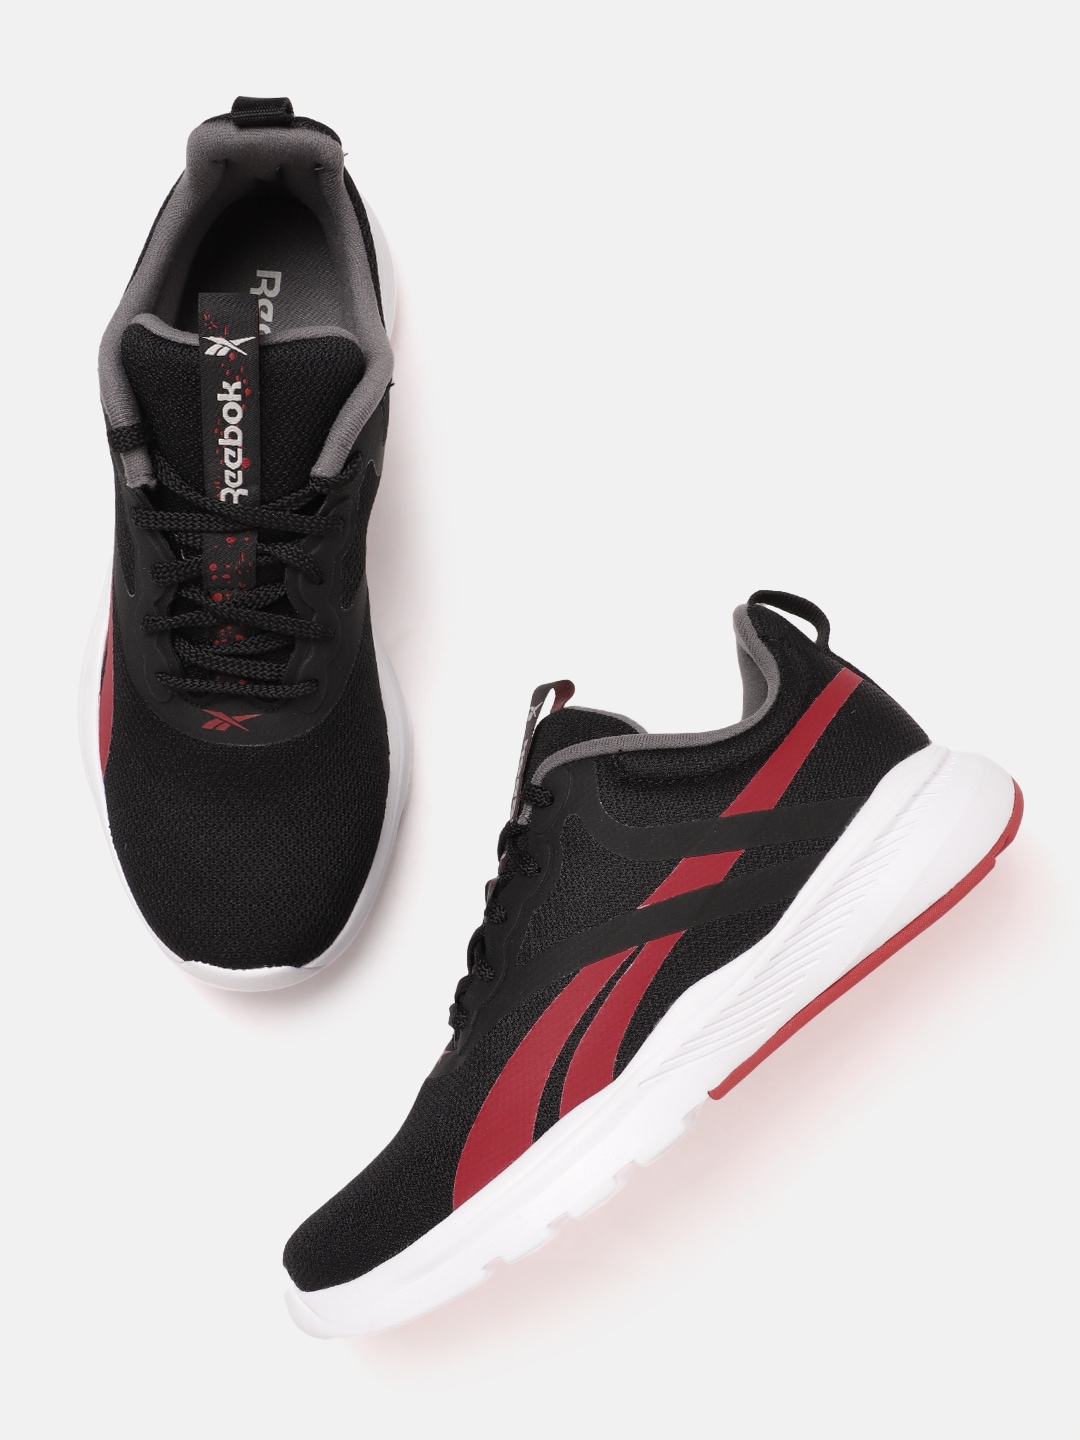 Reebok Men Woven Design Amplified Runner Shoes